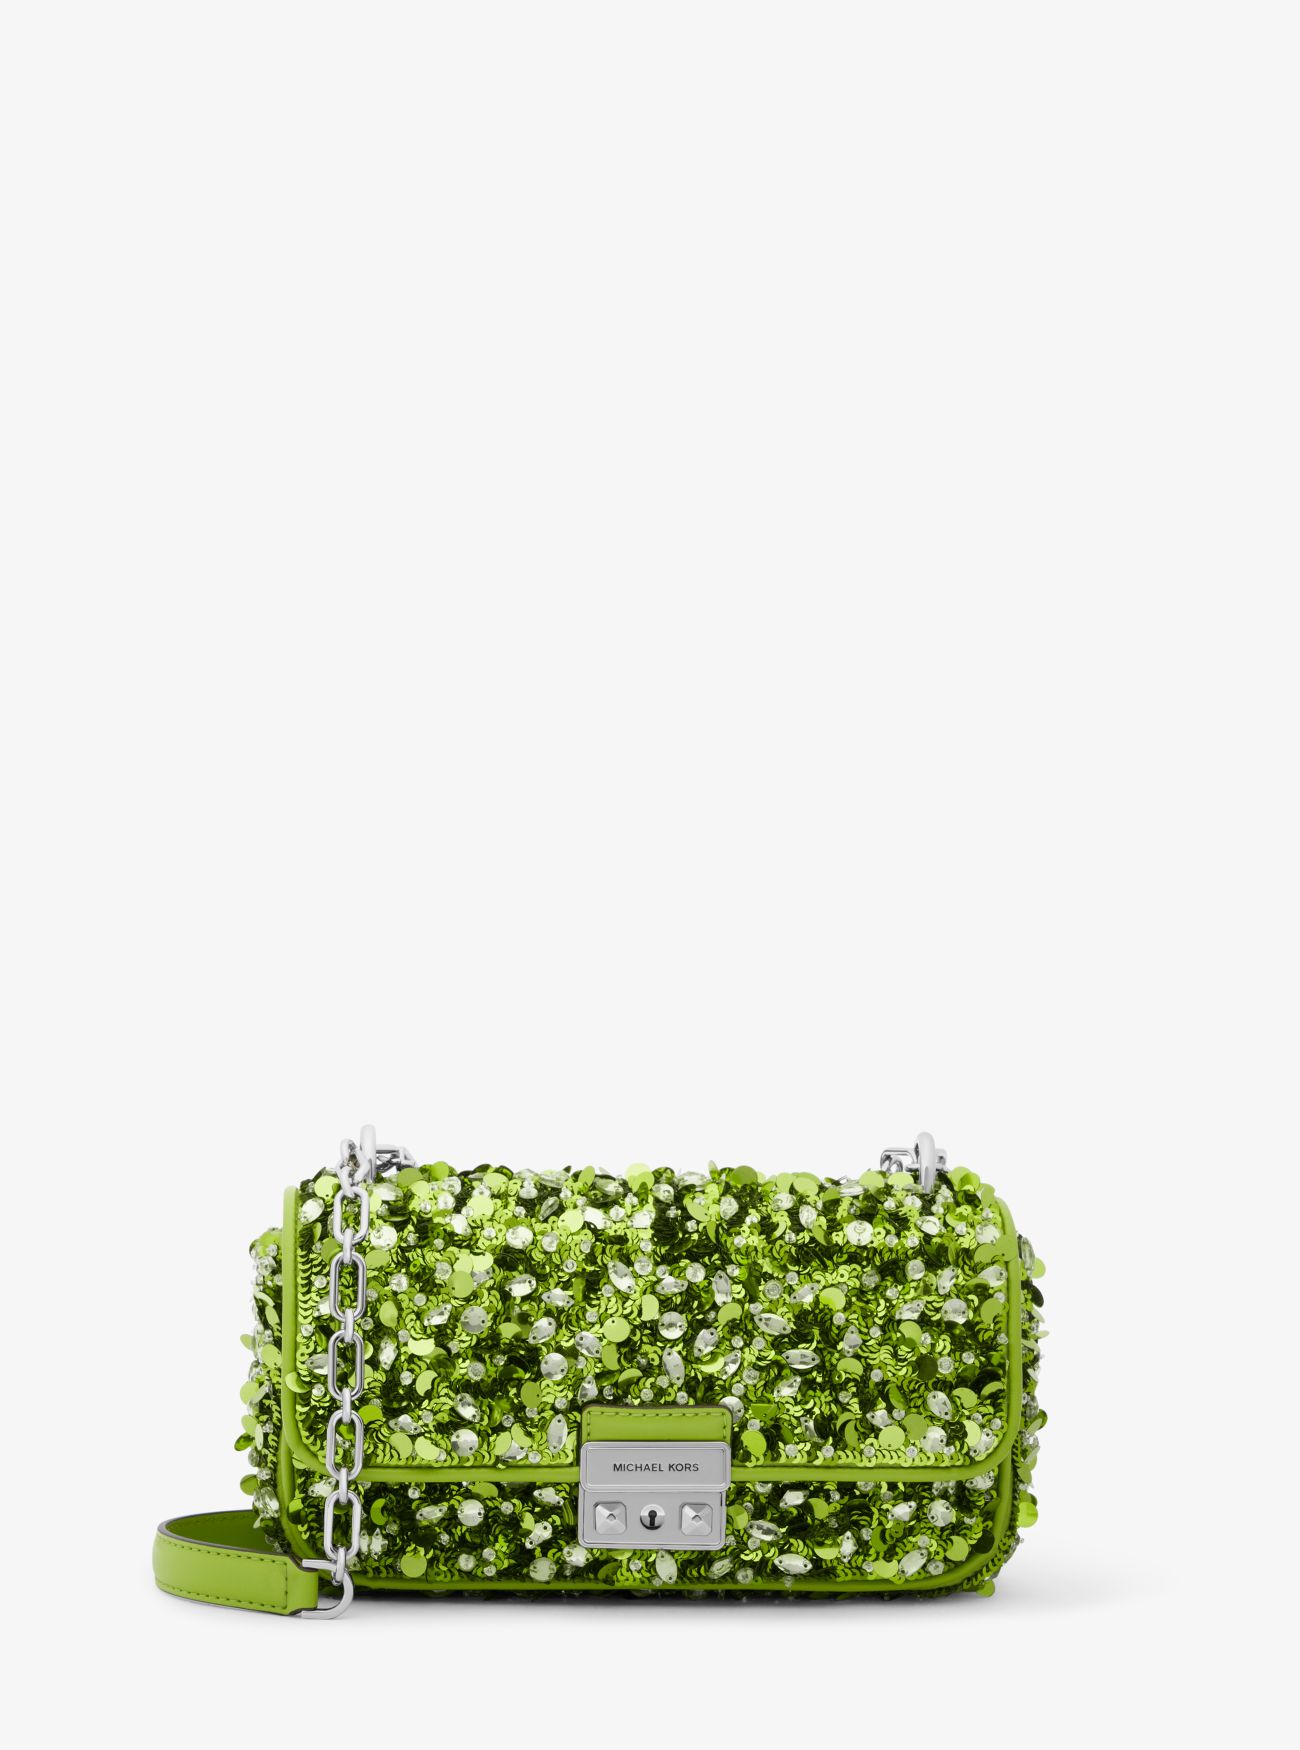 MK Limited-Edition Tribeca Small Hand-Embellished Shoulder Bag - Green - Michael Kors